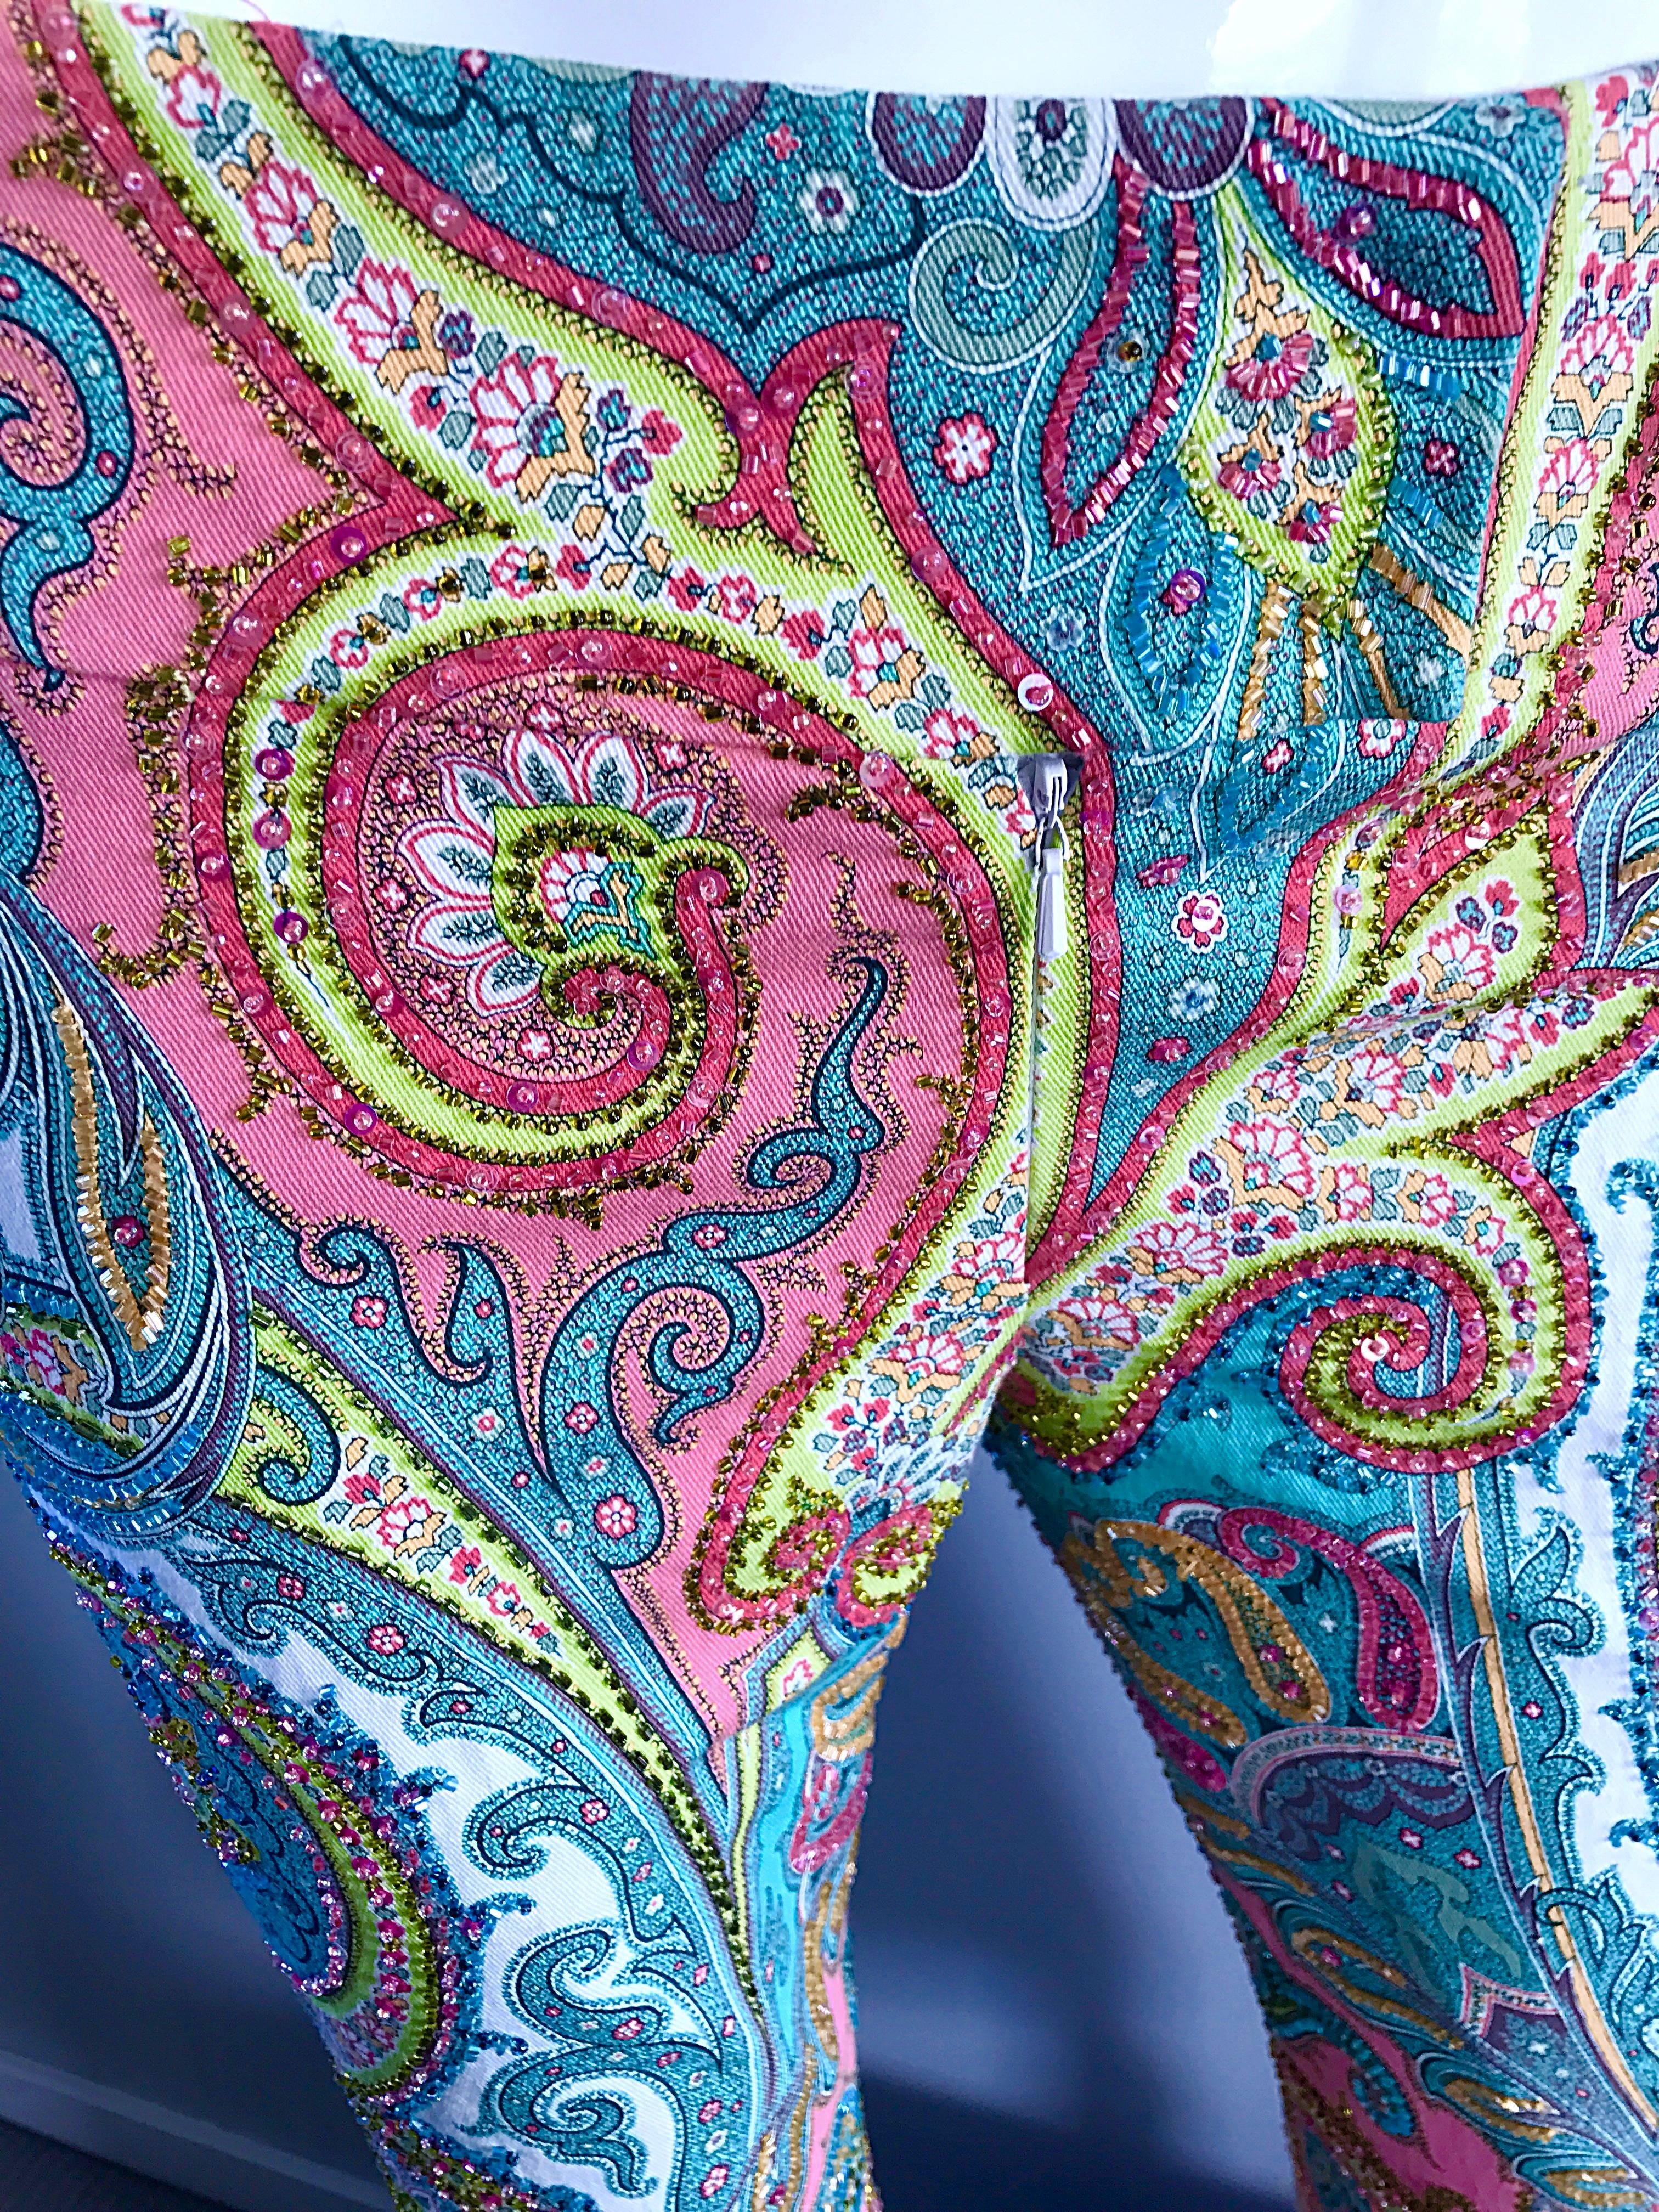 Incroyable pantalon à taille basse CARMEN MARC VALVO 90s entièrement perlé et coloré à motif cachemire ! Des milliers de perles cousues à la main sur le devant et le dos. Coupe taille basse flatteuse. Des teintes vibrantes de rose, bleu, corail,